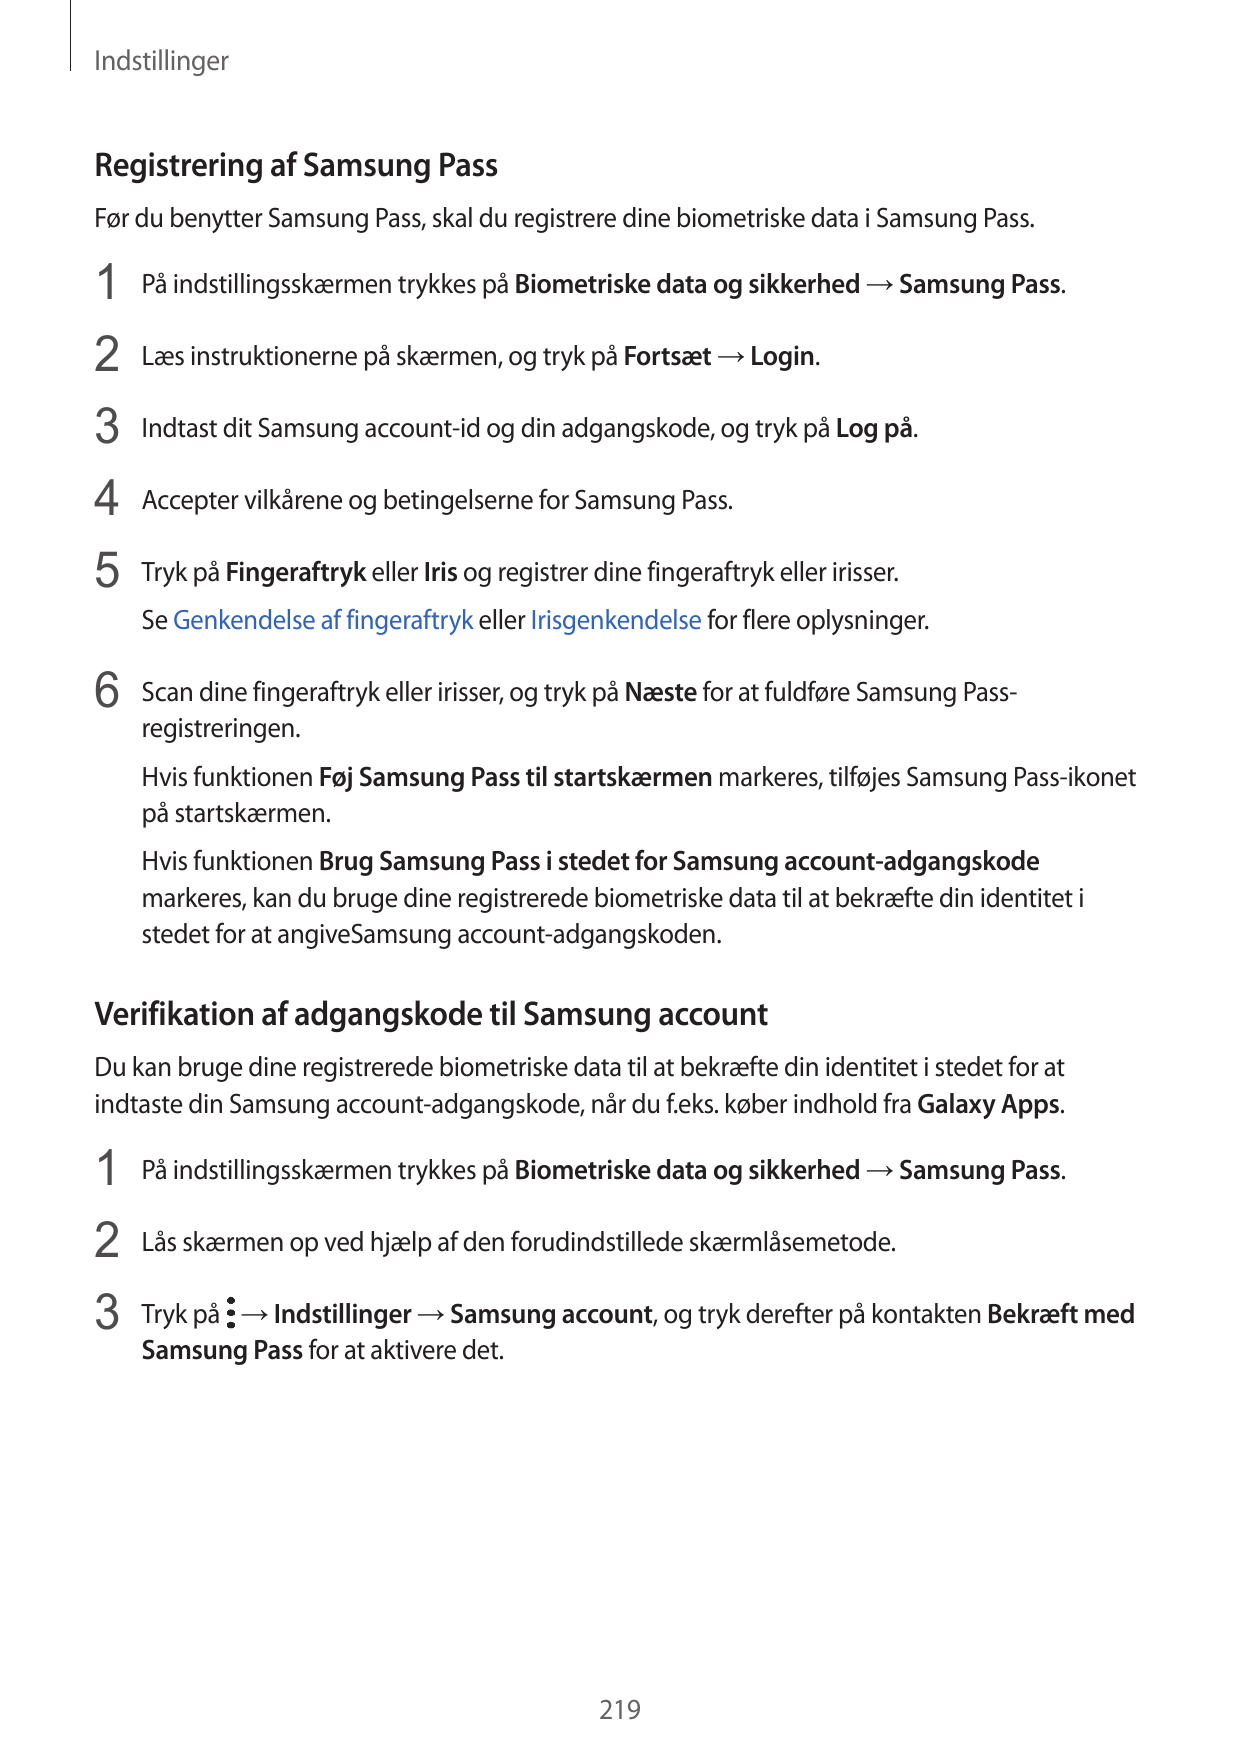 IndstillingerRegistrering af Samsung PassFør du benytter Samsung Pass, skal du registrere dine biometriske data i Samsung Pass.1